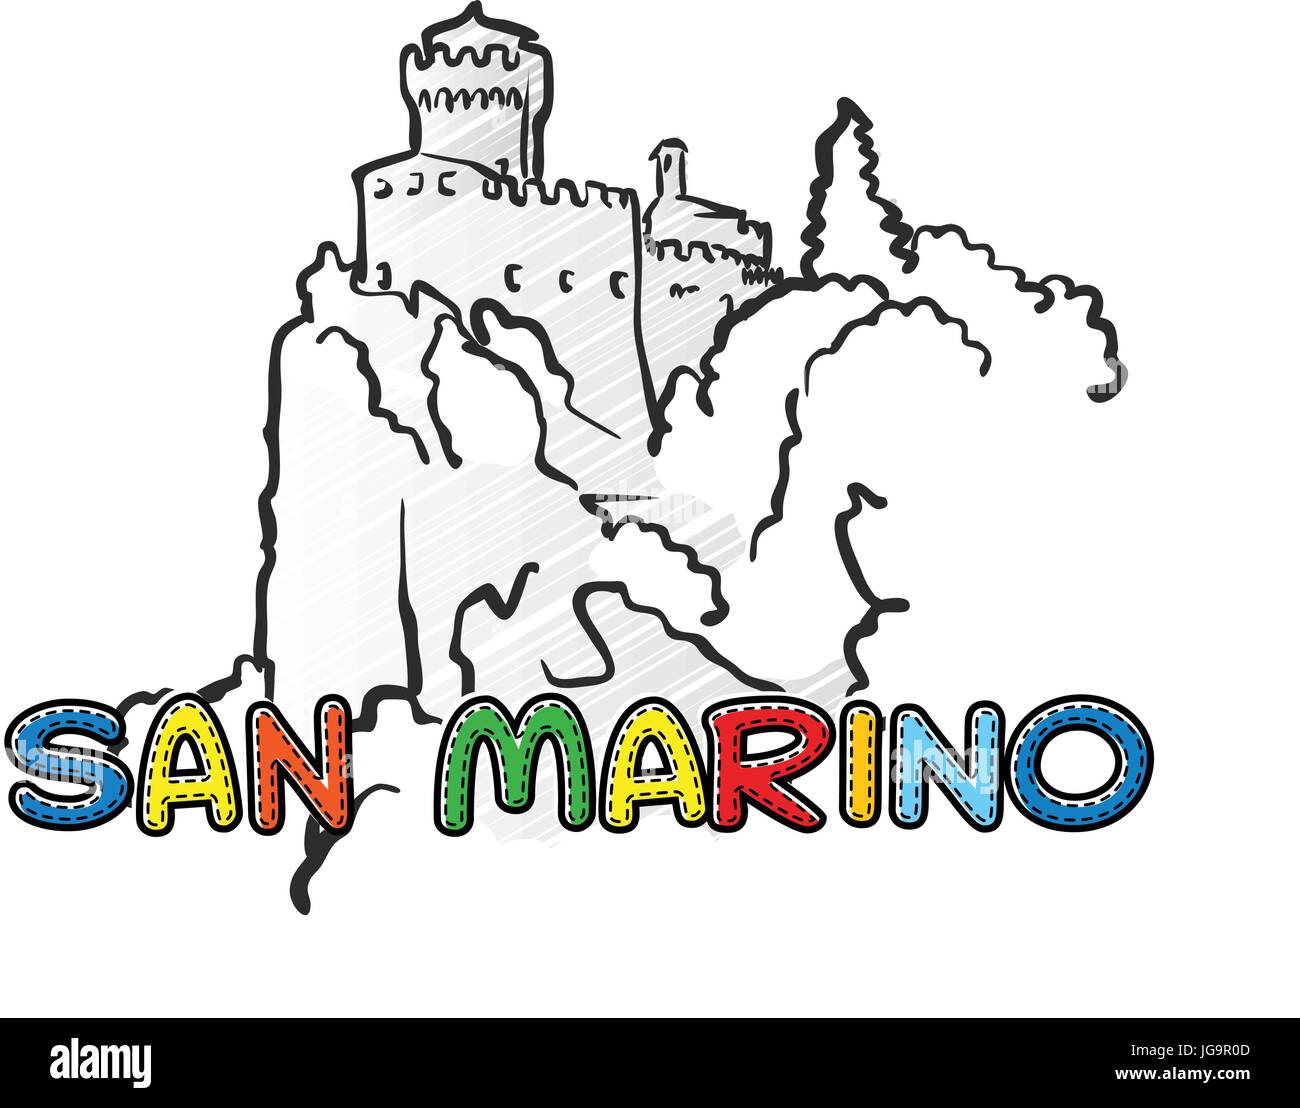 San Marino schöne skizzierte Ikone, Famaous handgezeichneten Wahrzeichen, Stadt Name Schriftzug, Vektor-illustration Stock Vektor